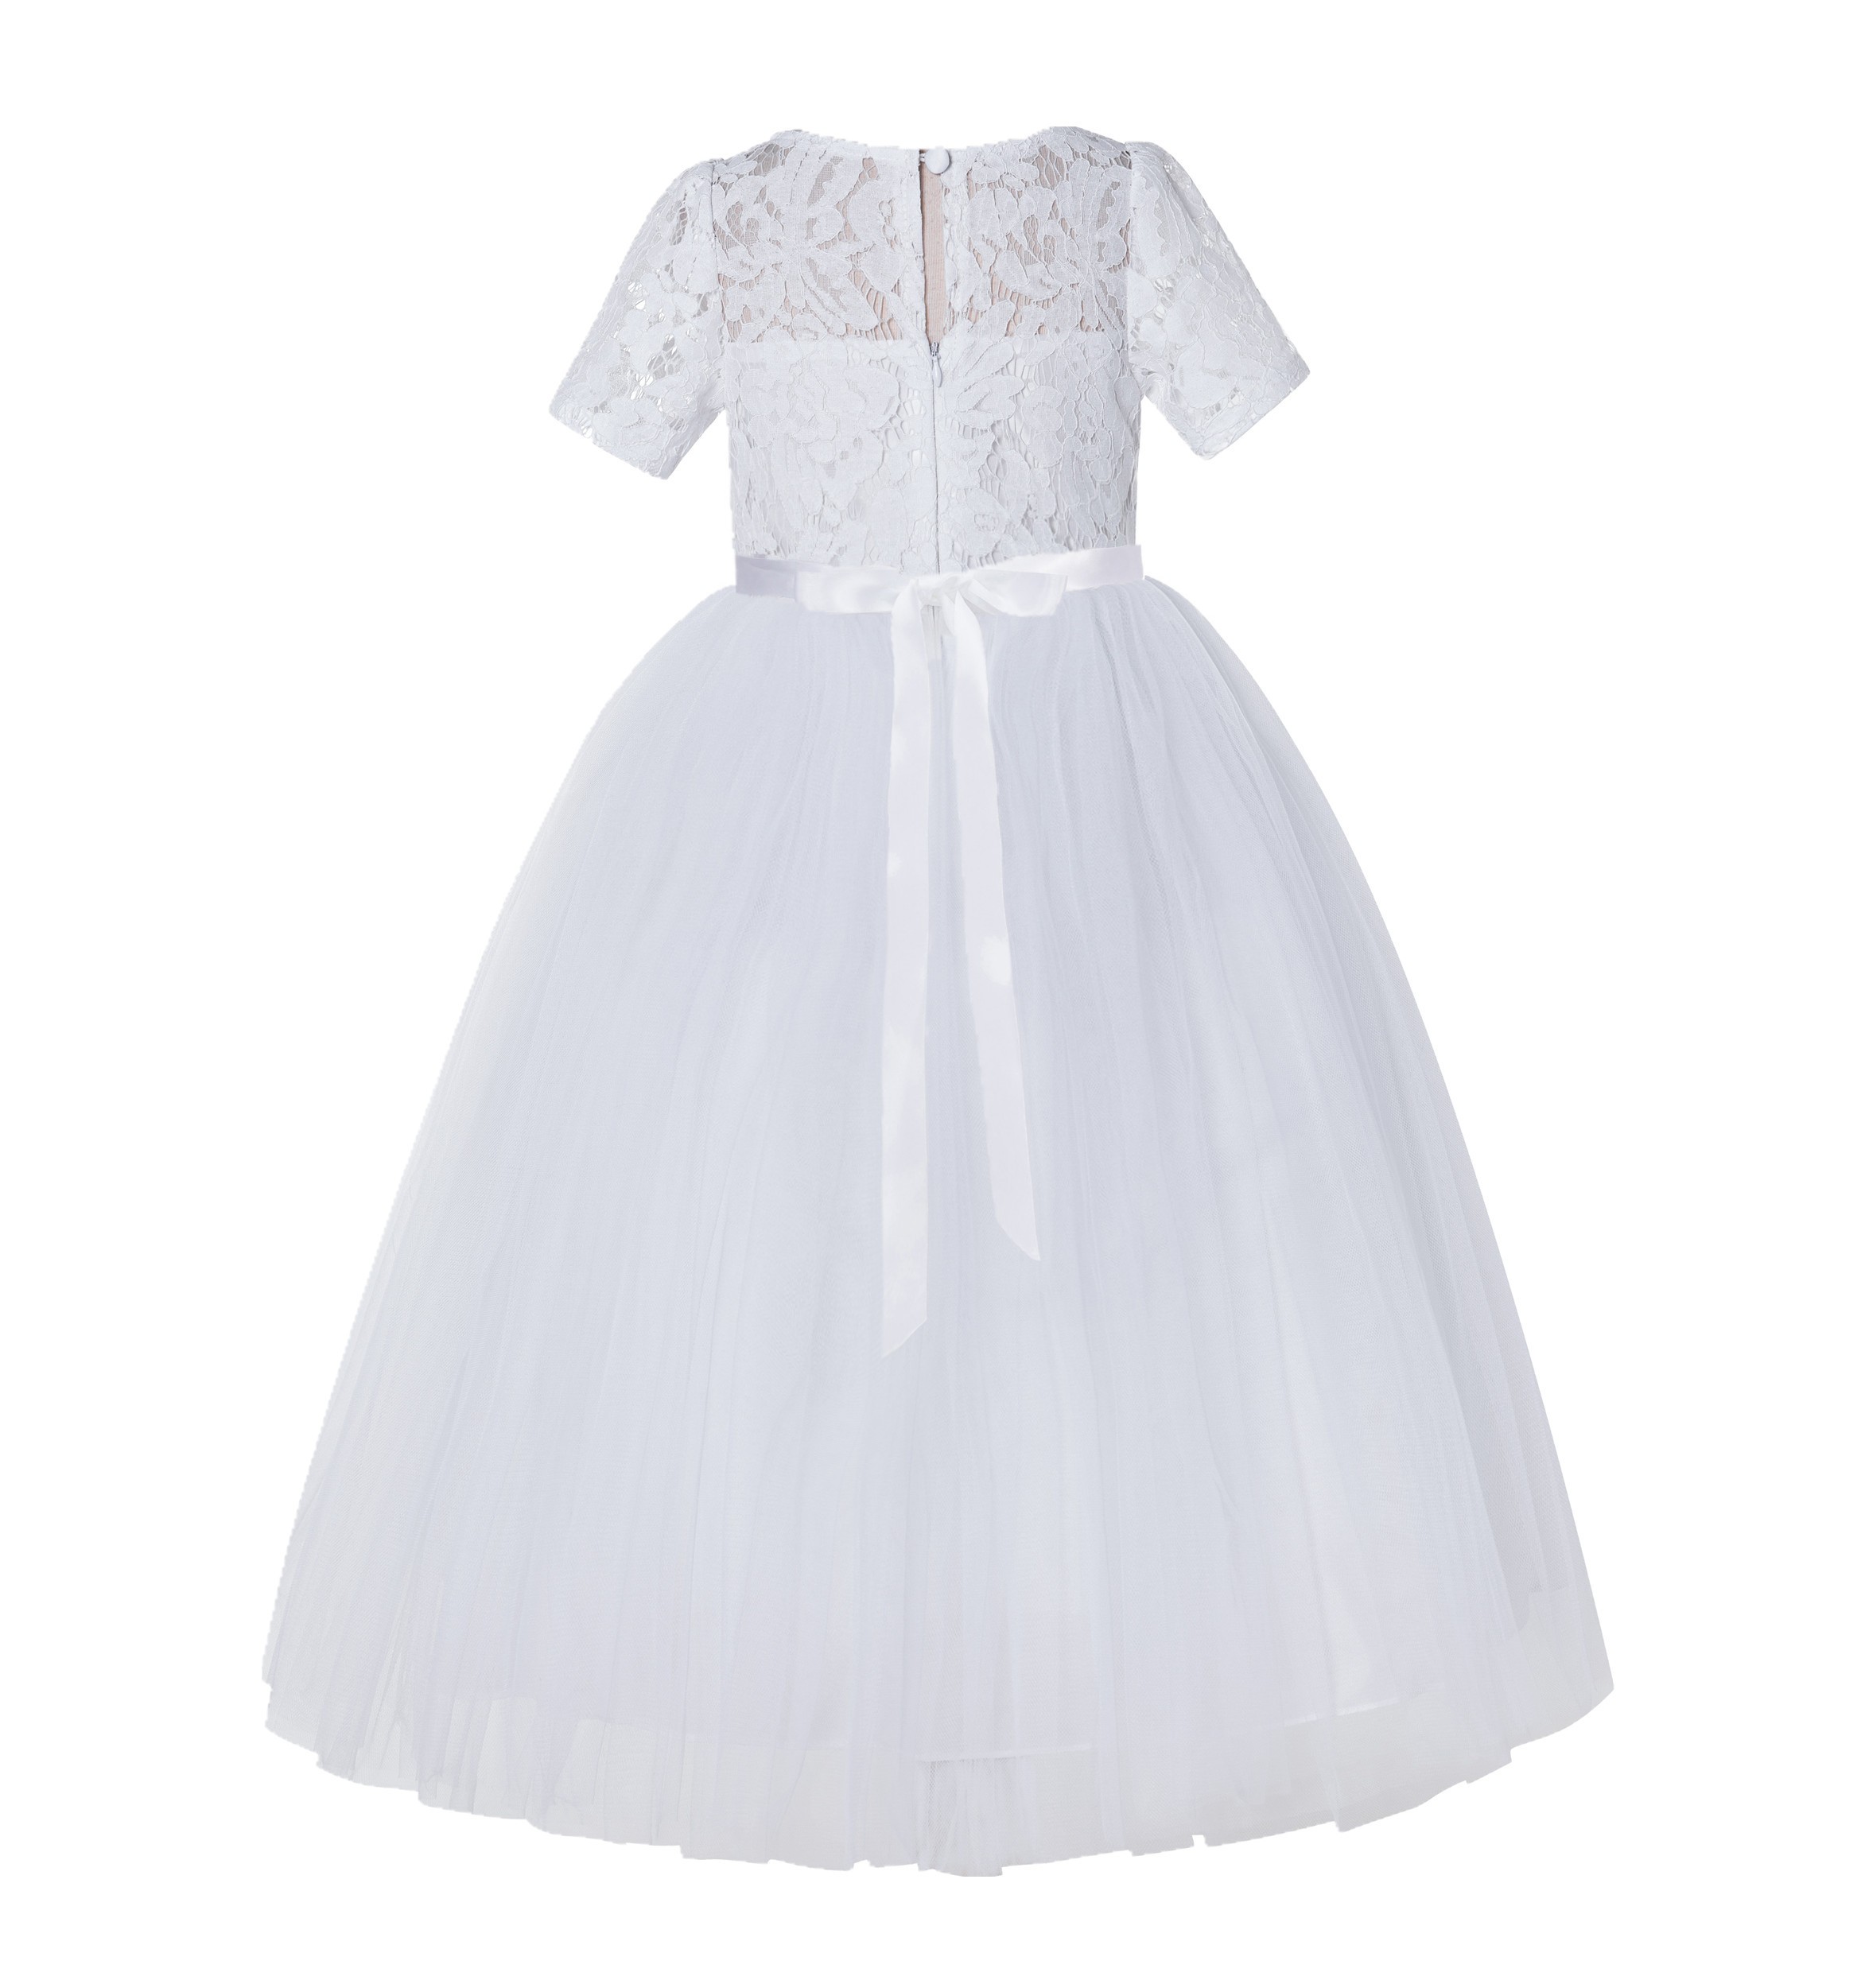 White Floral Lace Flower Girl Dress Vintage Dress LG2